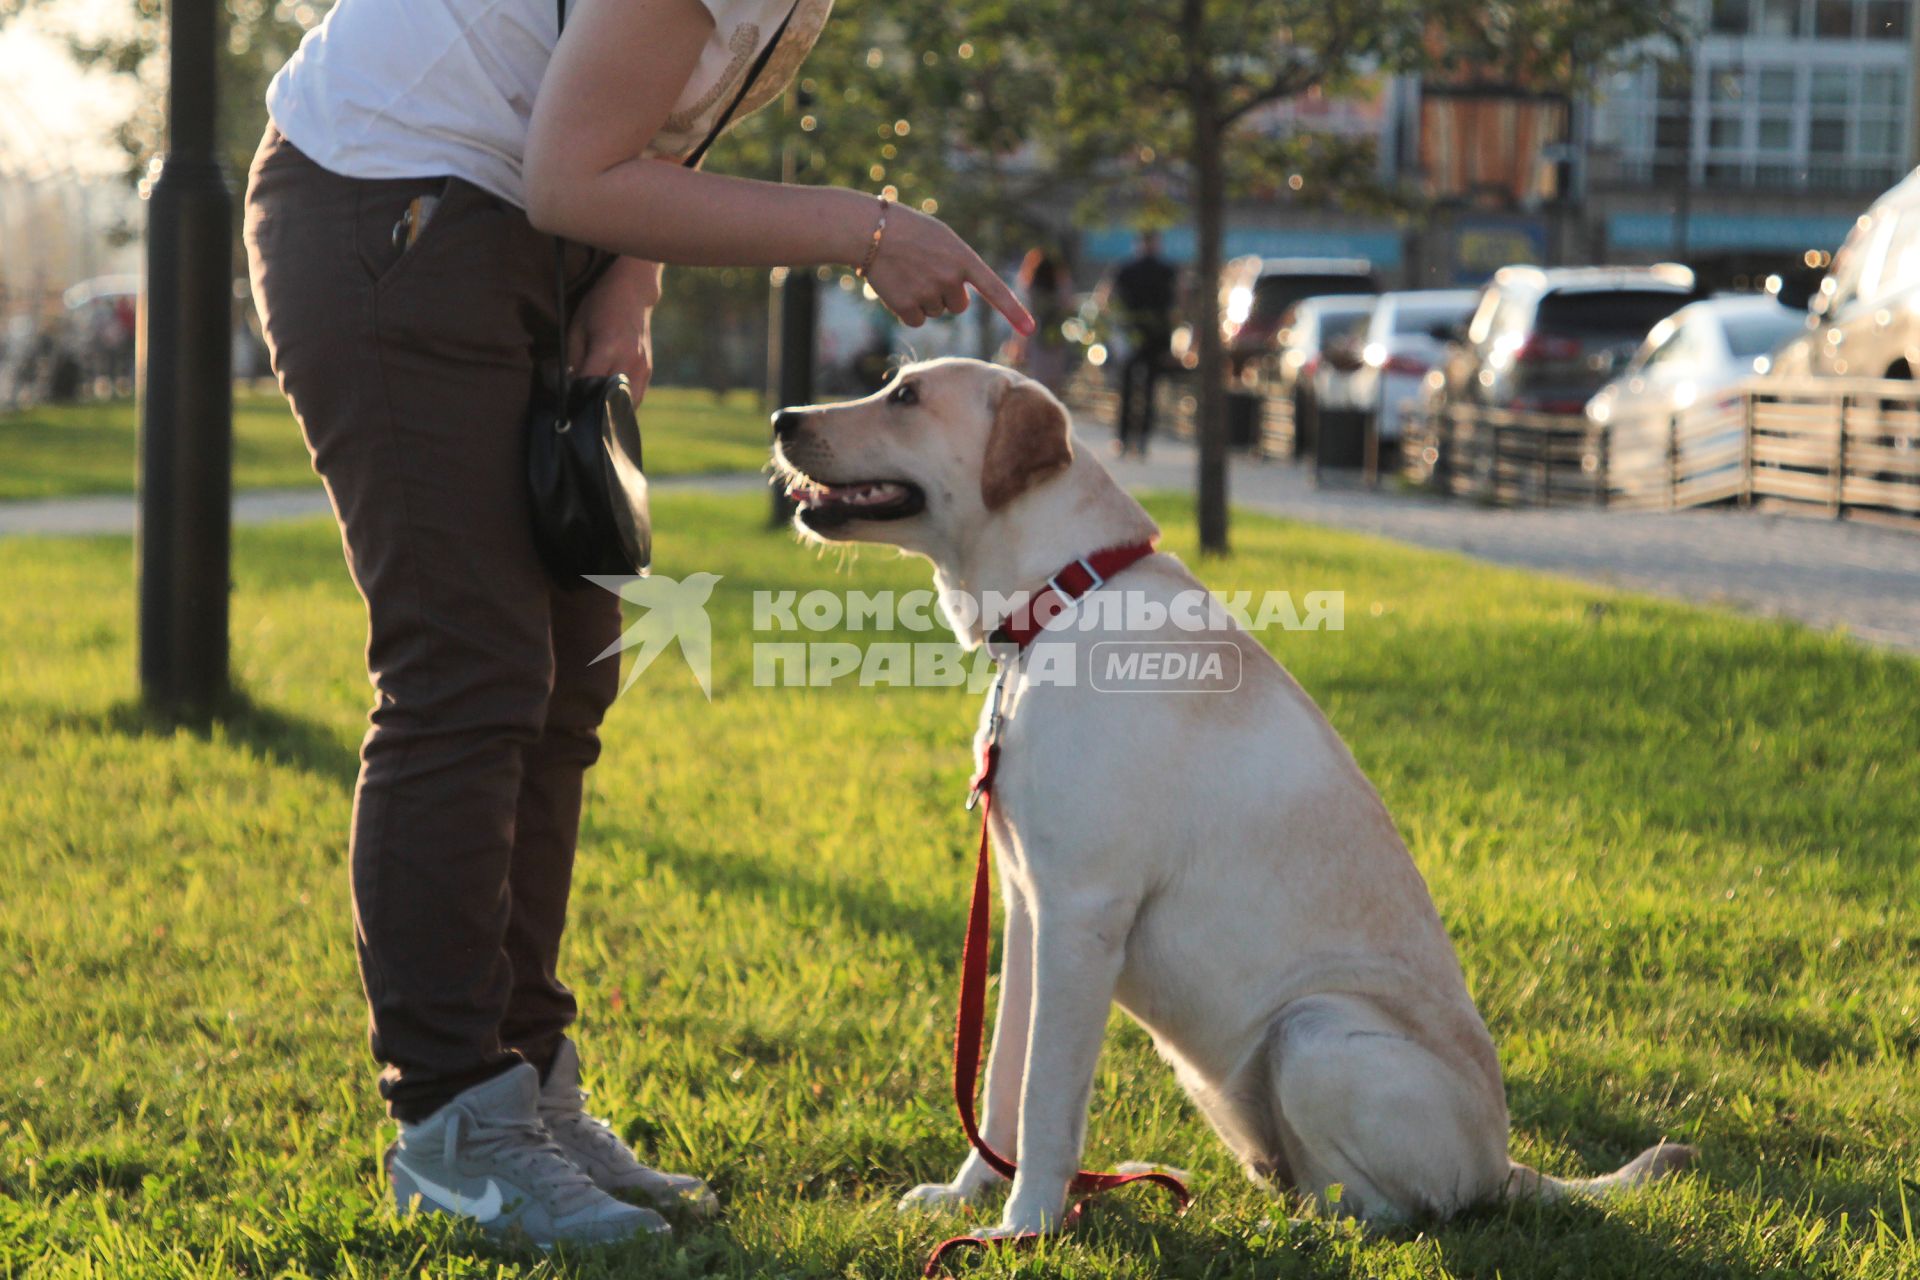 Иркутск. Девушка дрессирует  собаку породы лабрадор во  время прогулки.